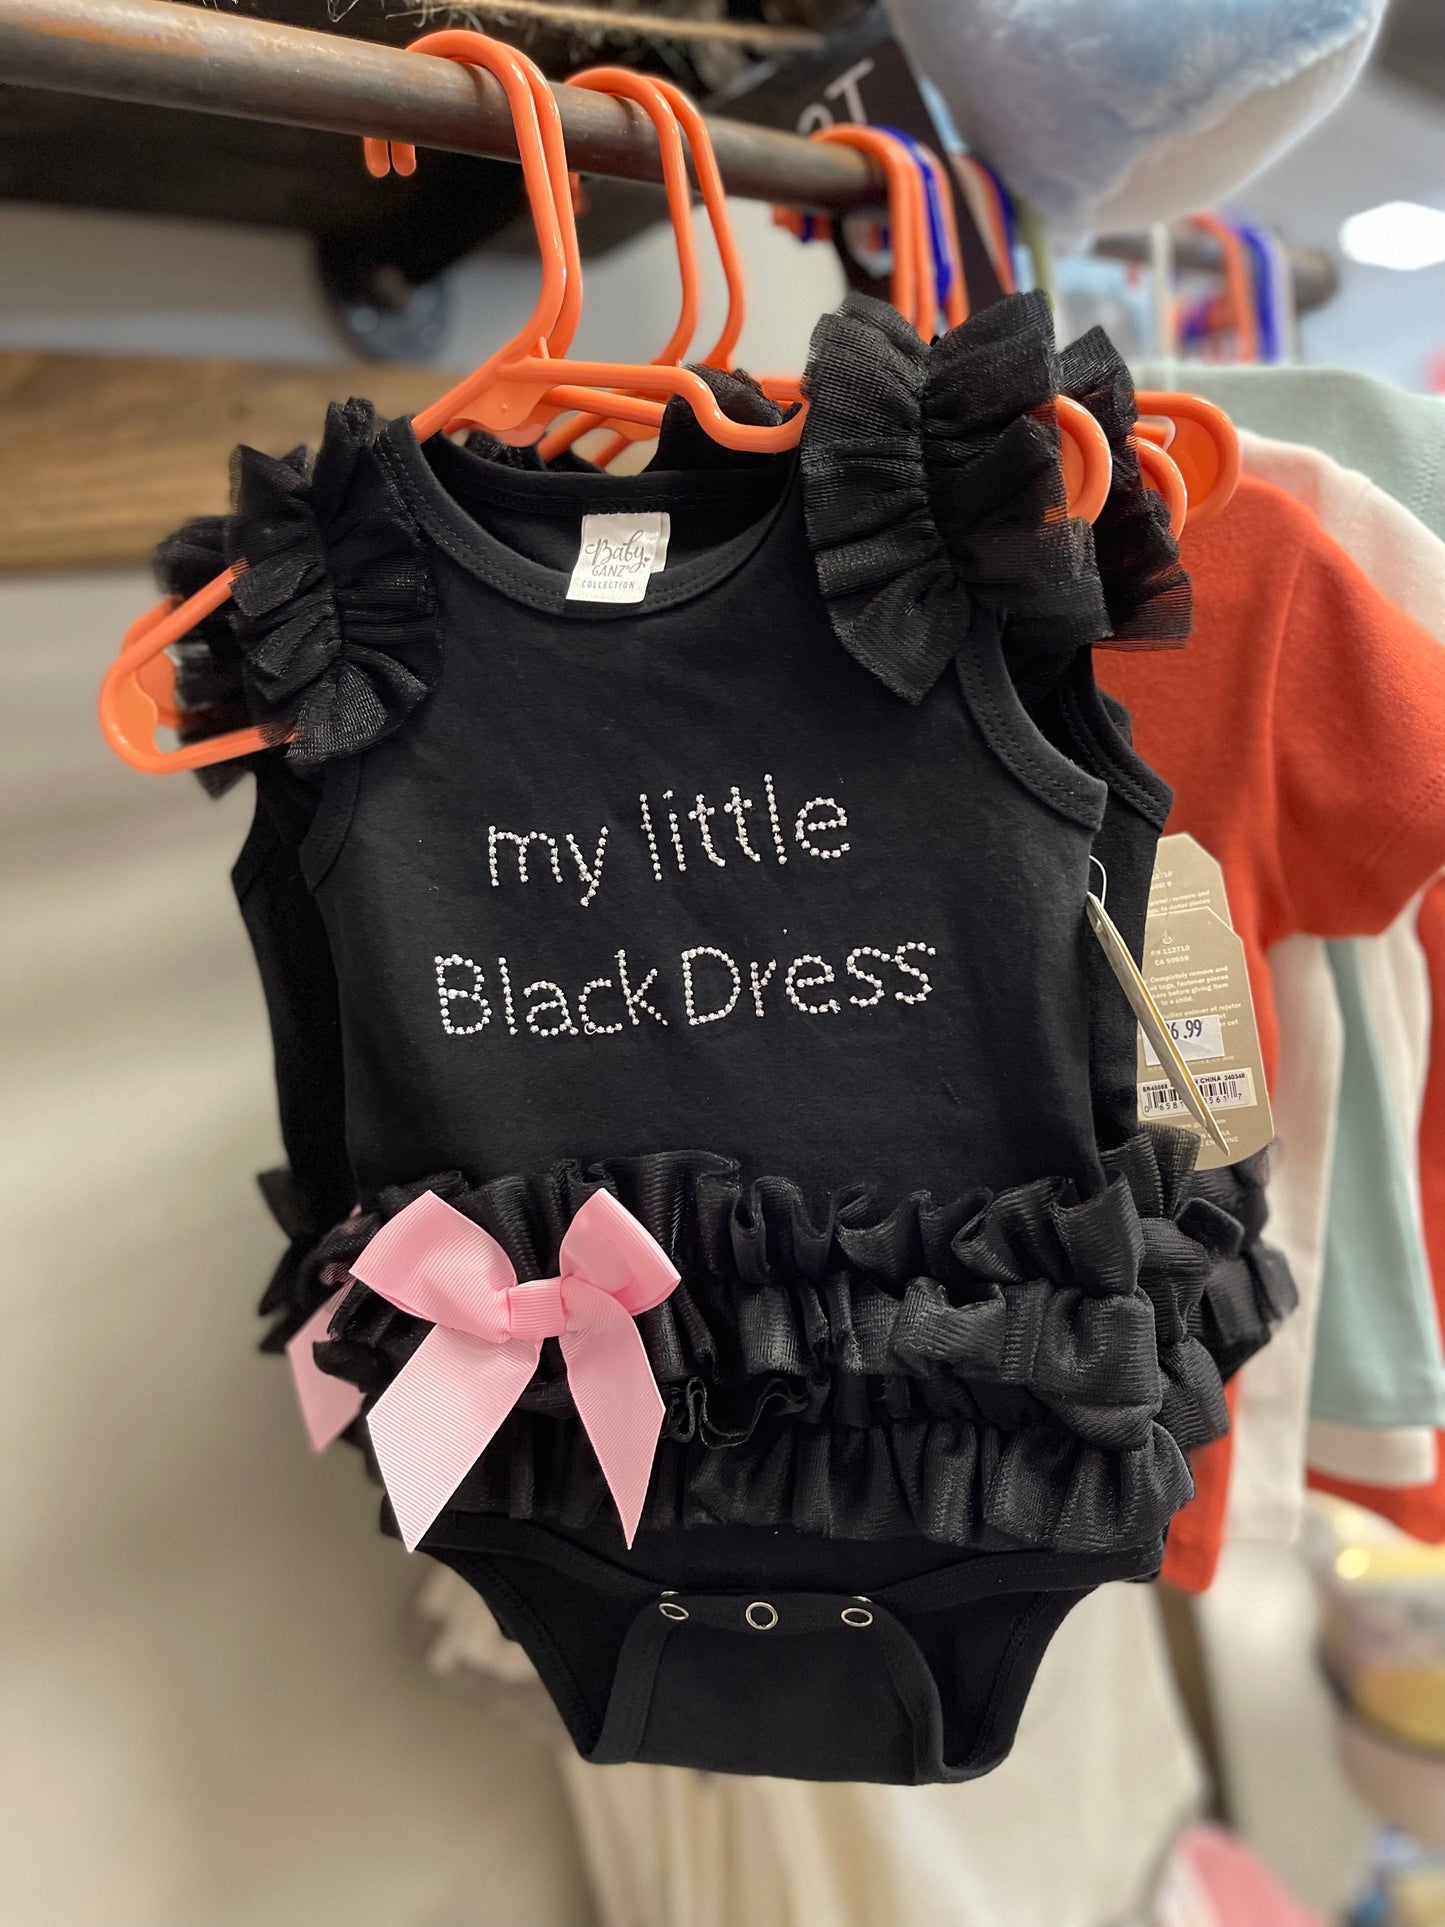 Little Black Dress Onesie